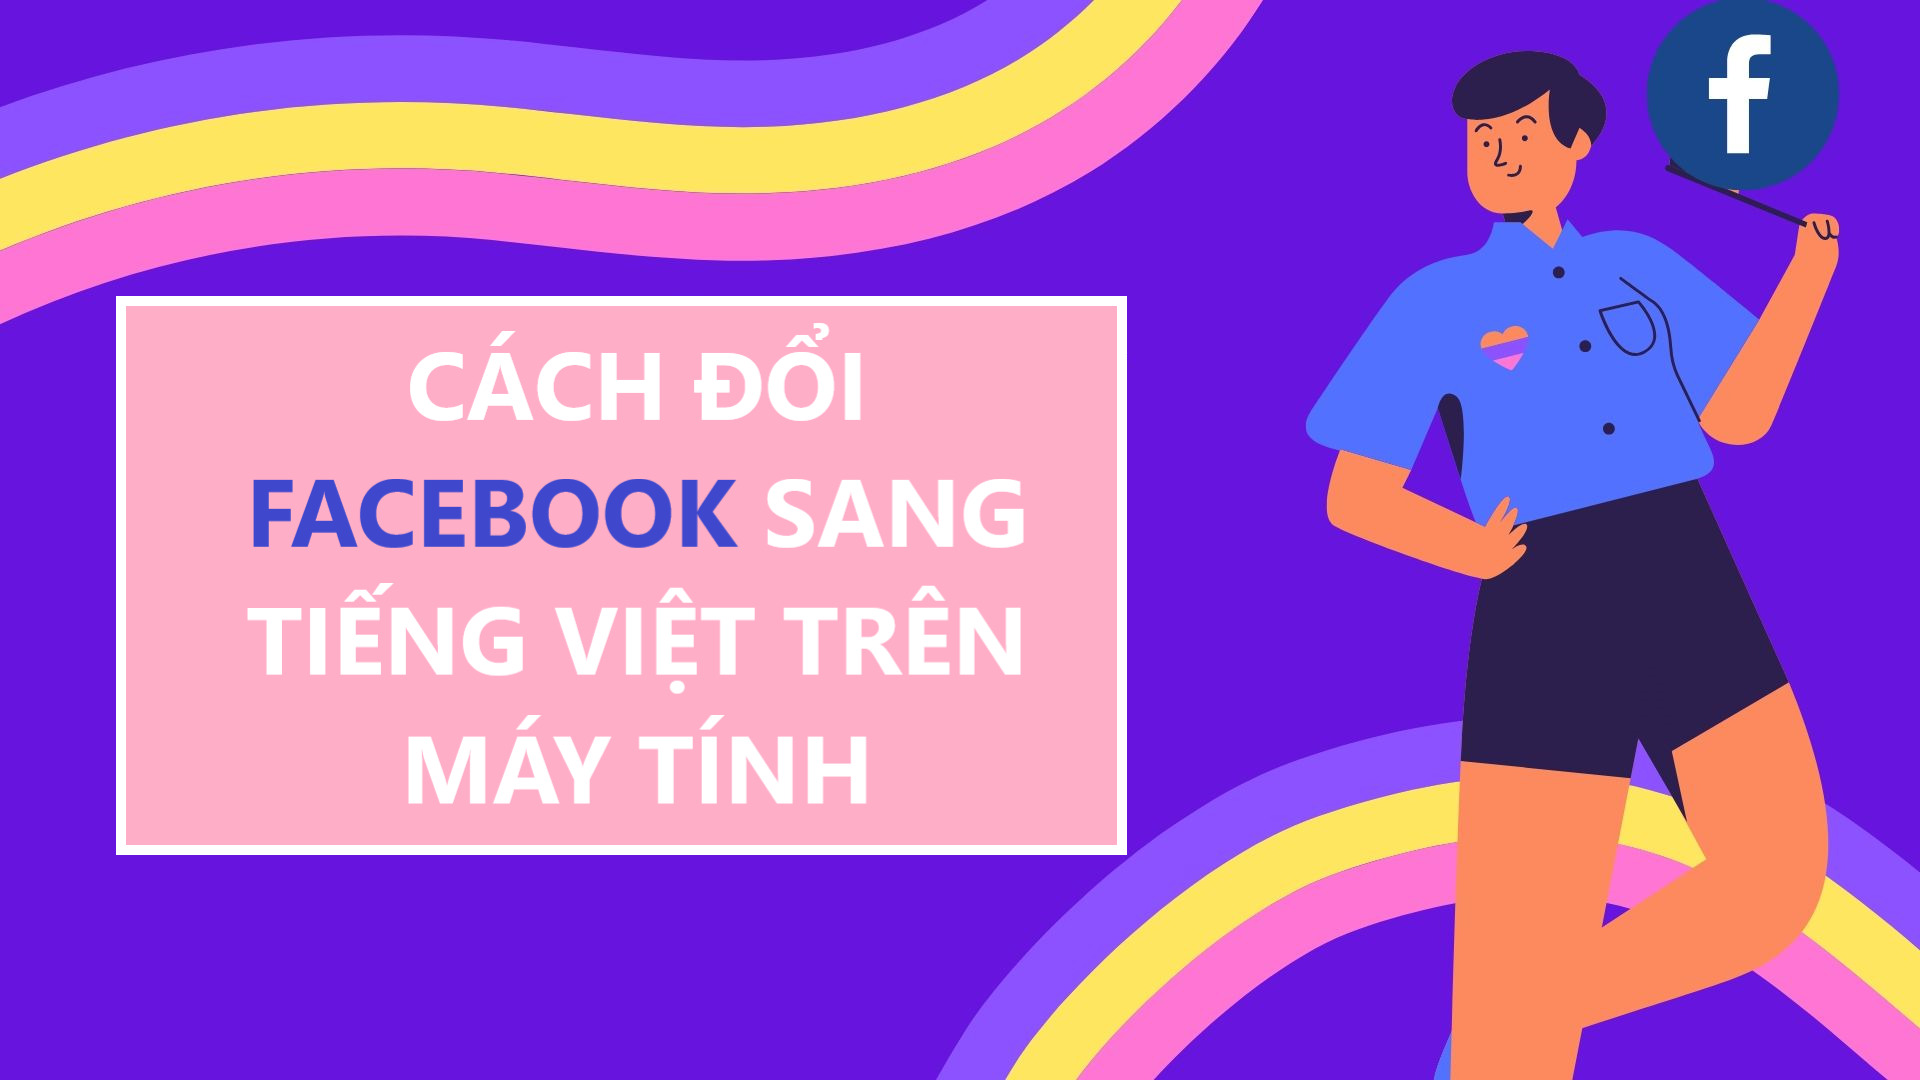 Hướng dẫn từng bước chuyển Facebook sang Tiếng Việt trên máy tính